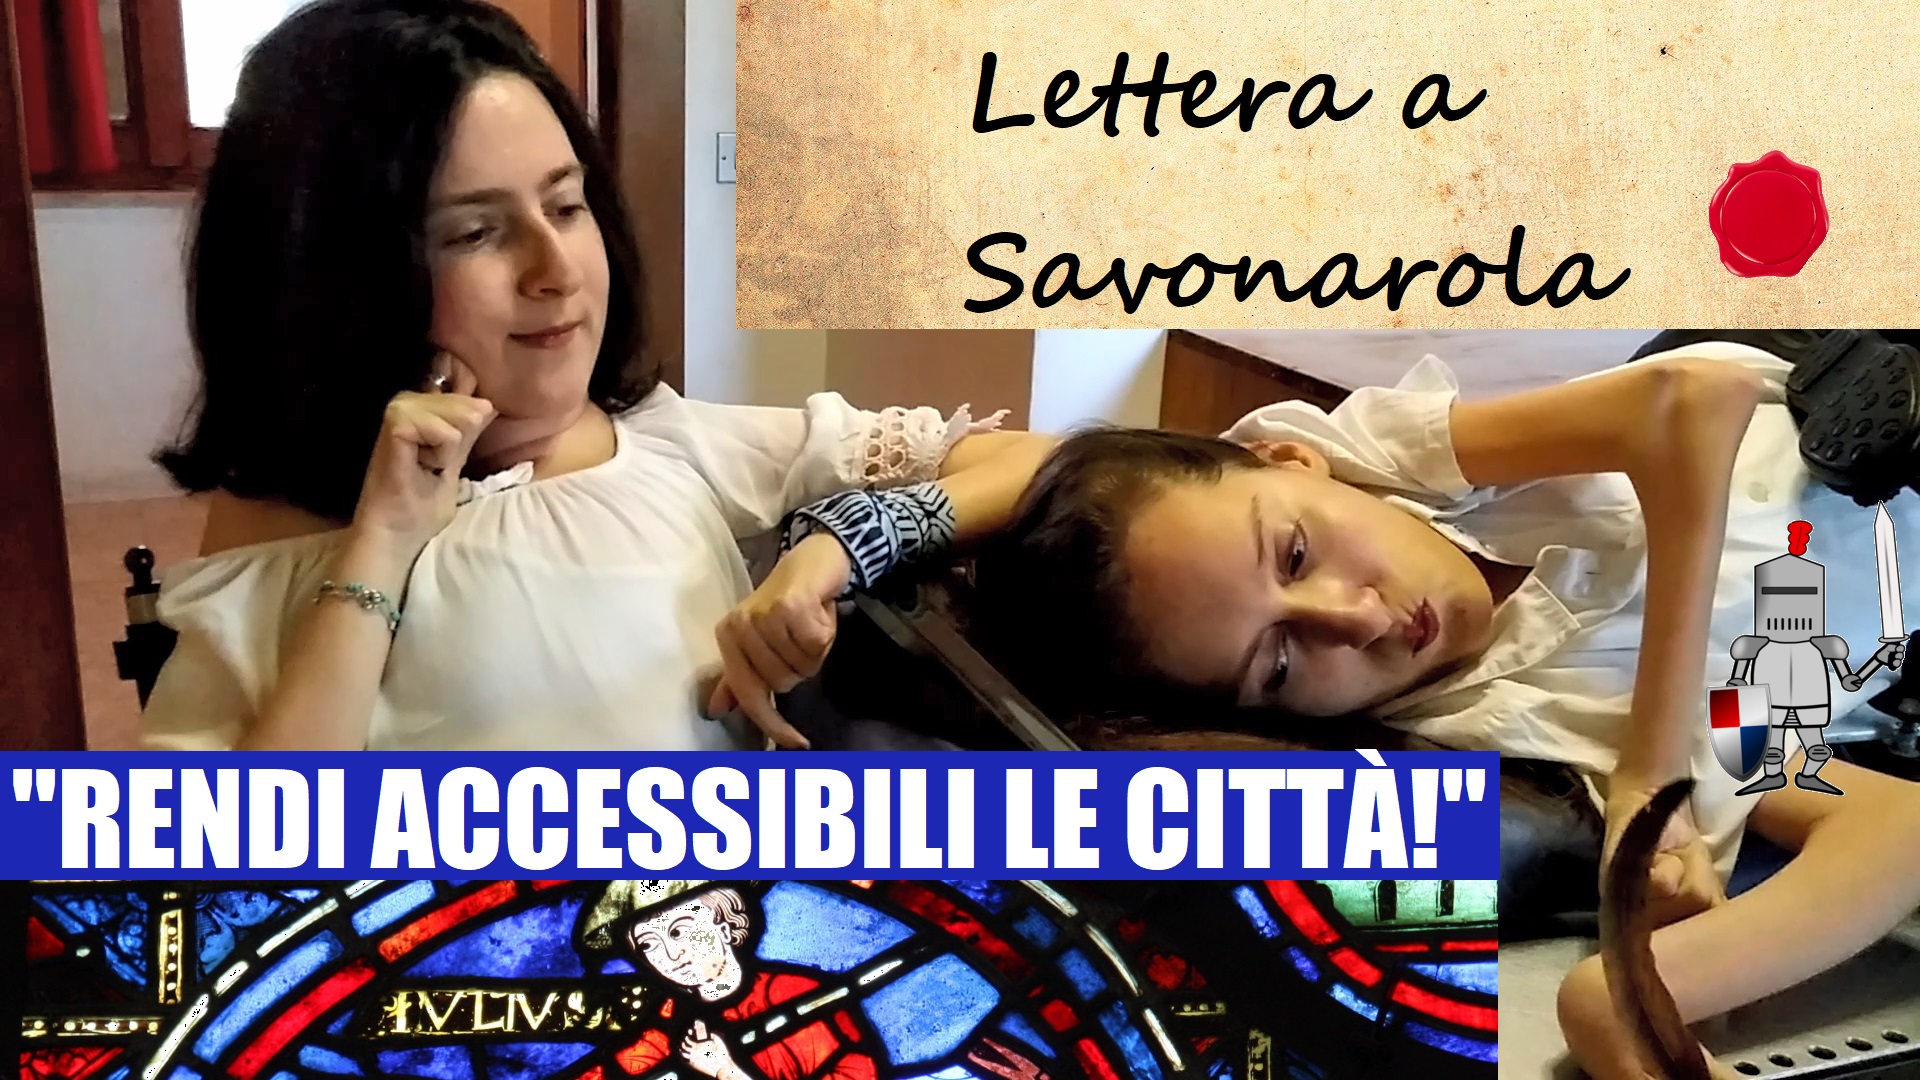 Maria Chiara e Elena sono una accanto all'altra in una stanza. Alle spalle hanno una finestra e davanti una scrivania. Elena scrive con una piuma, entrambe hanno l'aria concentrata. C'è la scritta "Lettera a Savonarola" e "Rendi accessibili le città!"